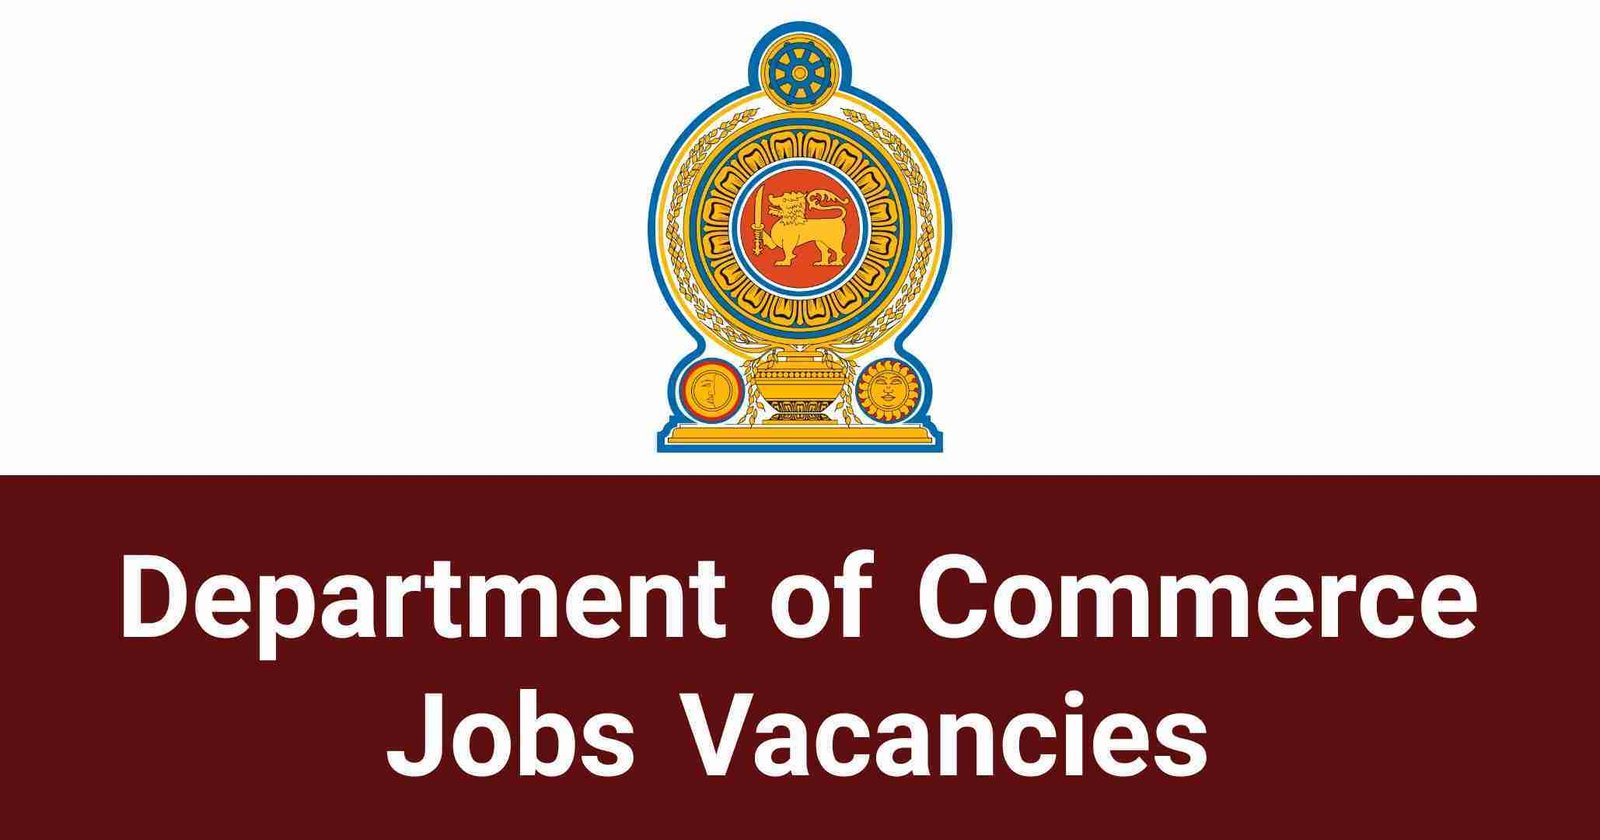 Department of Commerce Jobs Vacancies